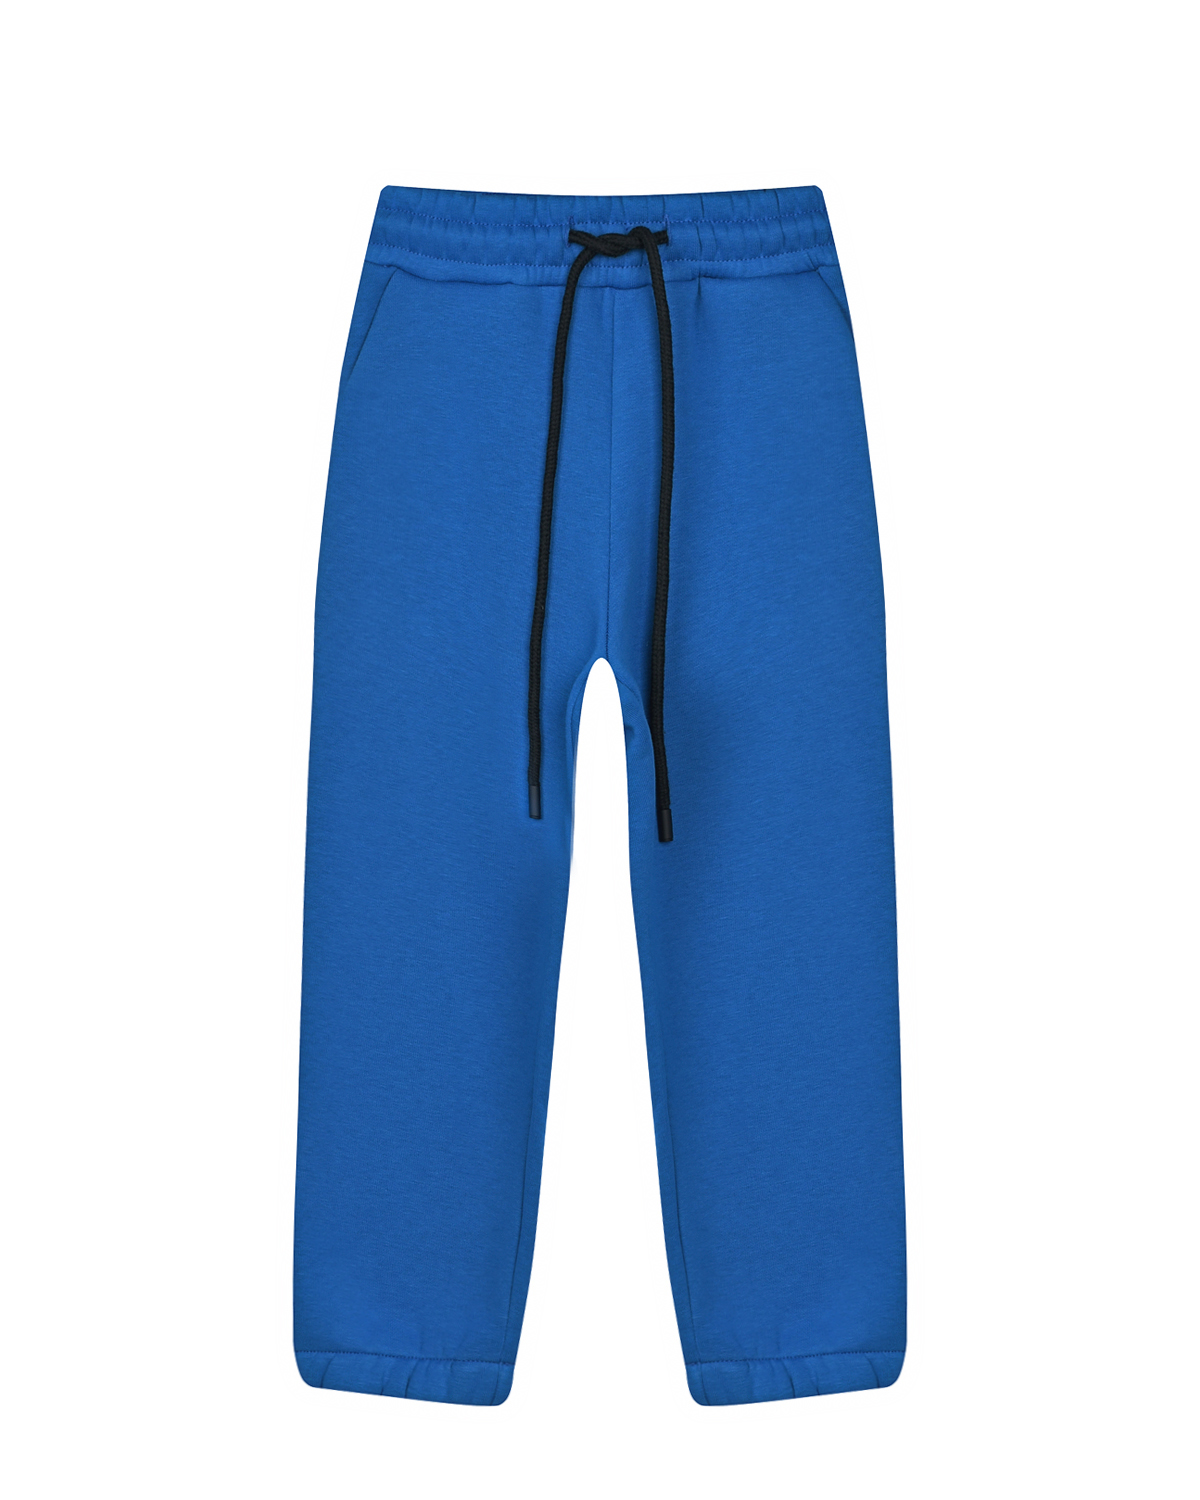 Синие спортивные брюки Dan Maralex детские, размер 104, цвет синий